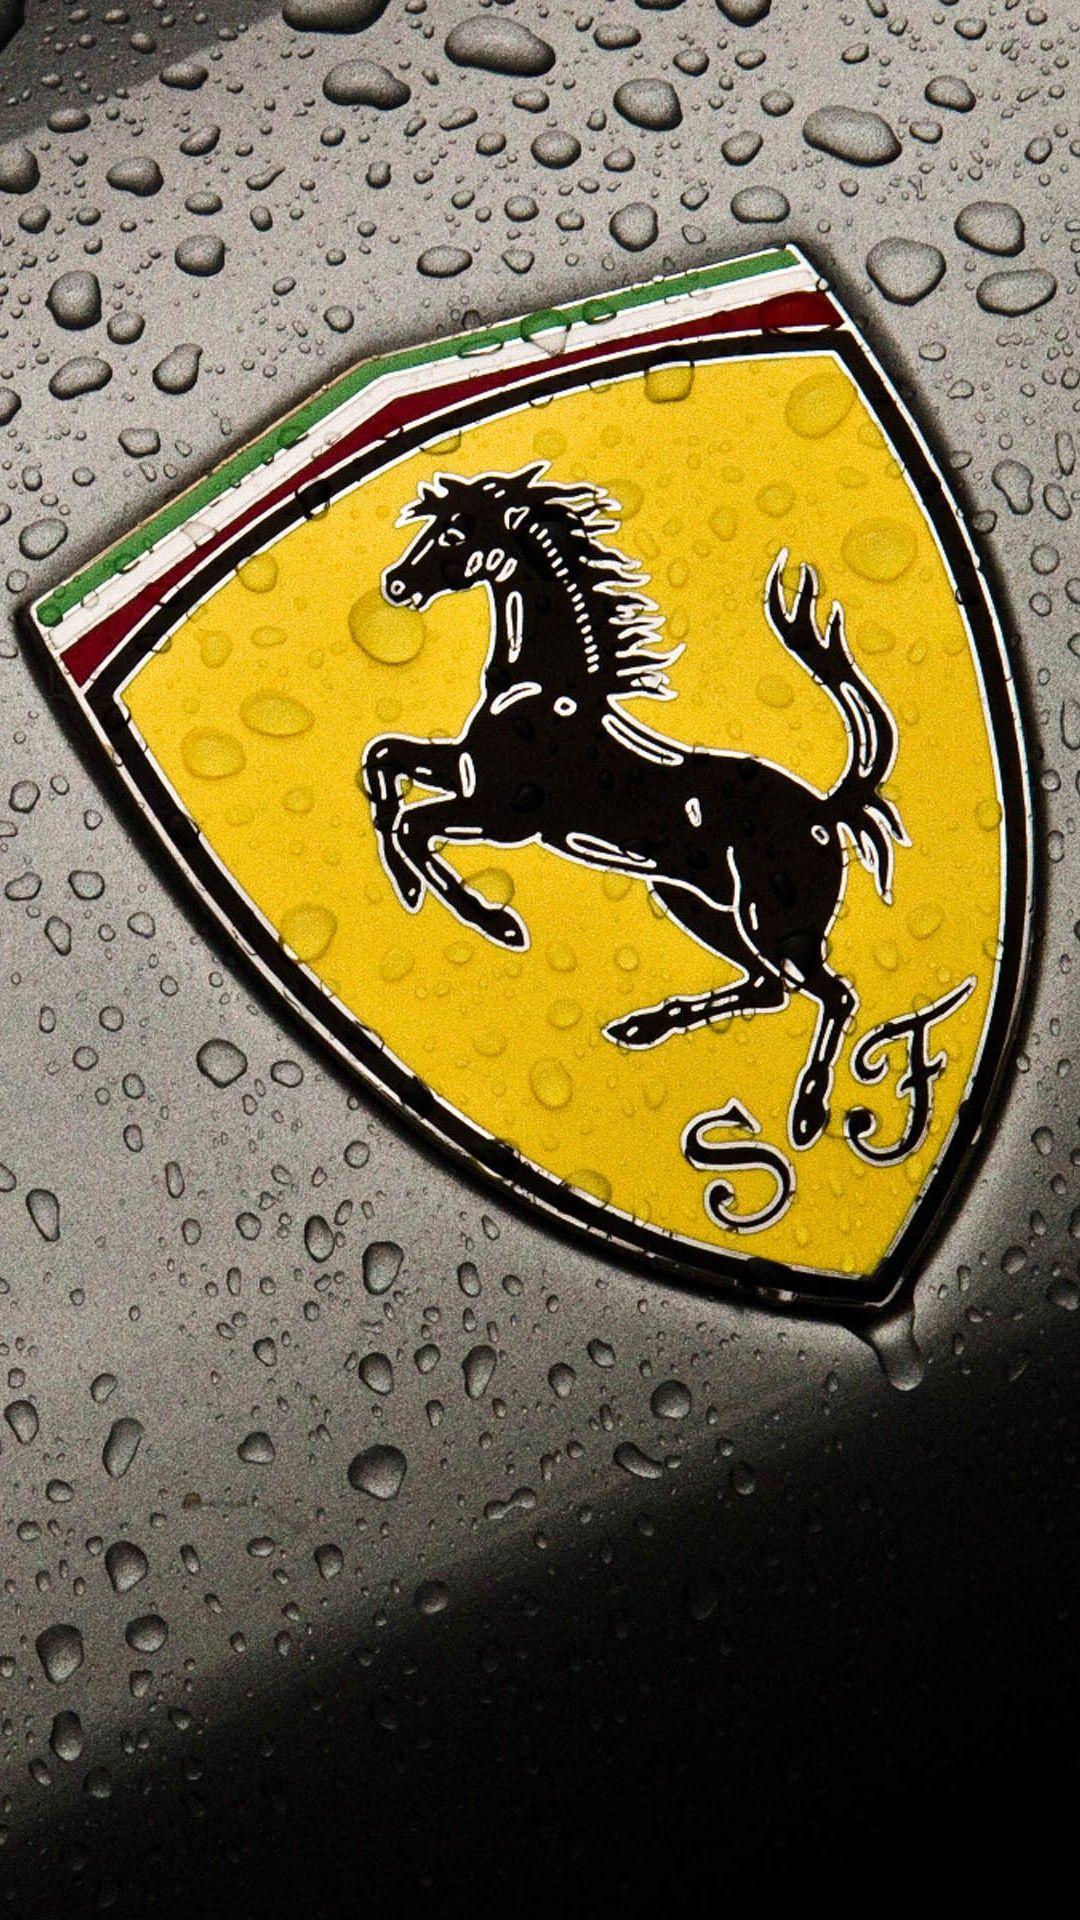 A symbol of Ferrari iPhone 7 wallpaper 1080x1920. Ferrari